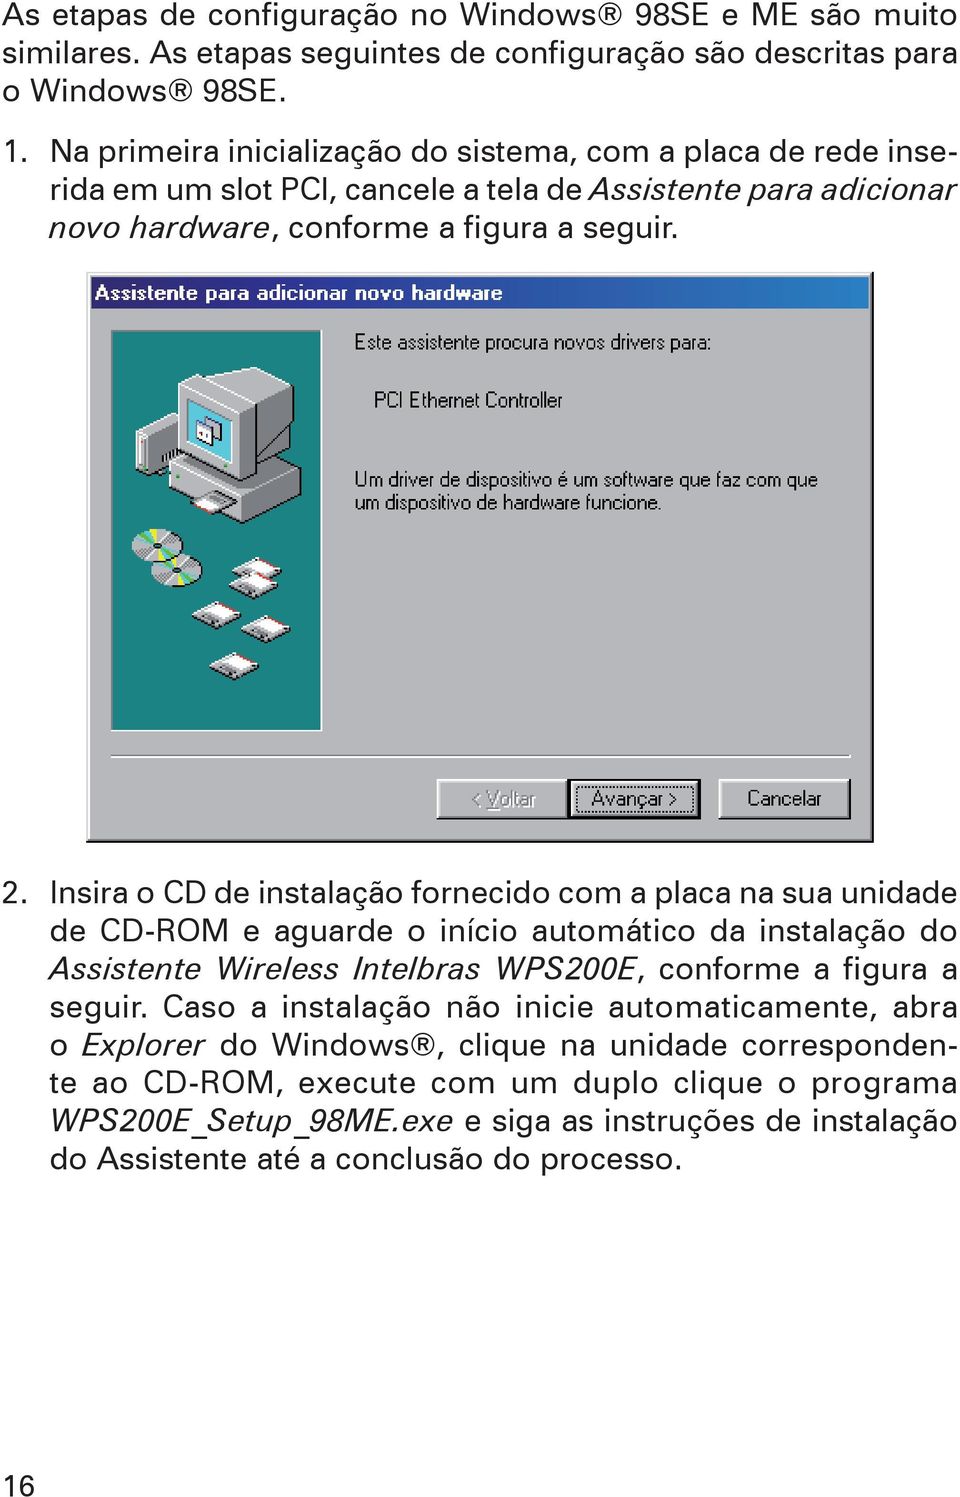 Insira o CD de instalação fornecido com a placa na sua unidade de CD-ROM e aguarde o início automático da instalação do Assistente Wireless Intelbras WPS200E, conforme a figura a seguir.